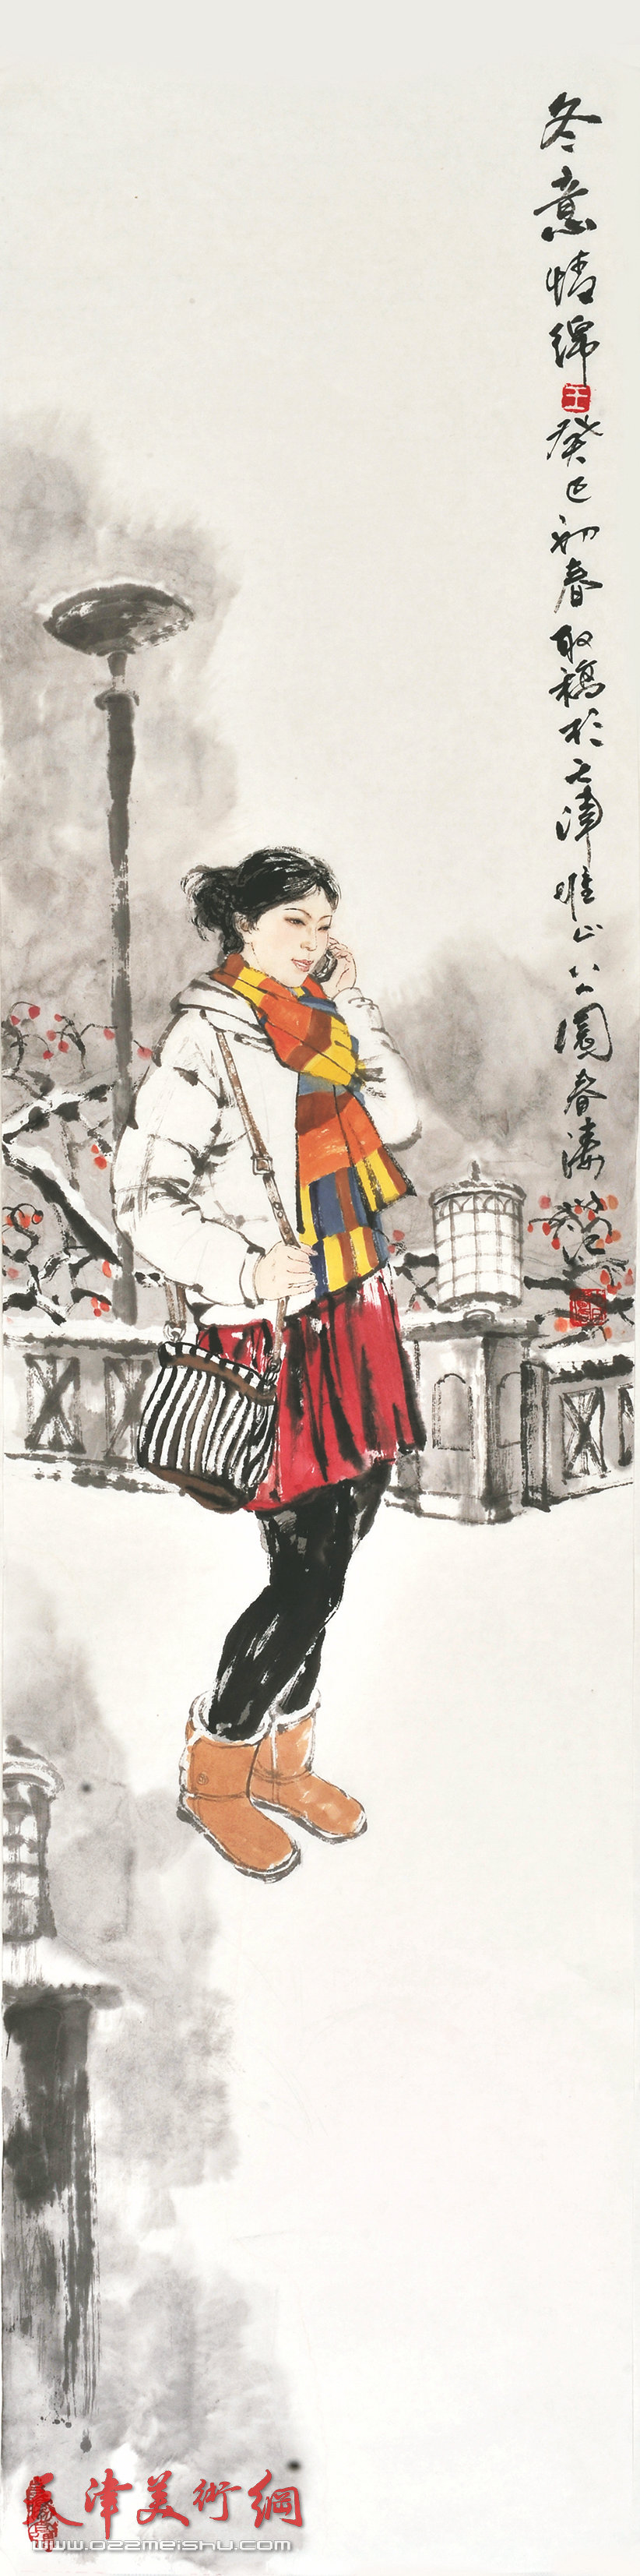 王春涛画展在齐鲁大地展津派画家风采，图为展出的王春涛新作《冬日绵绵》